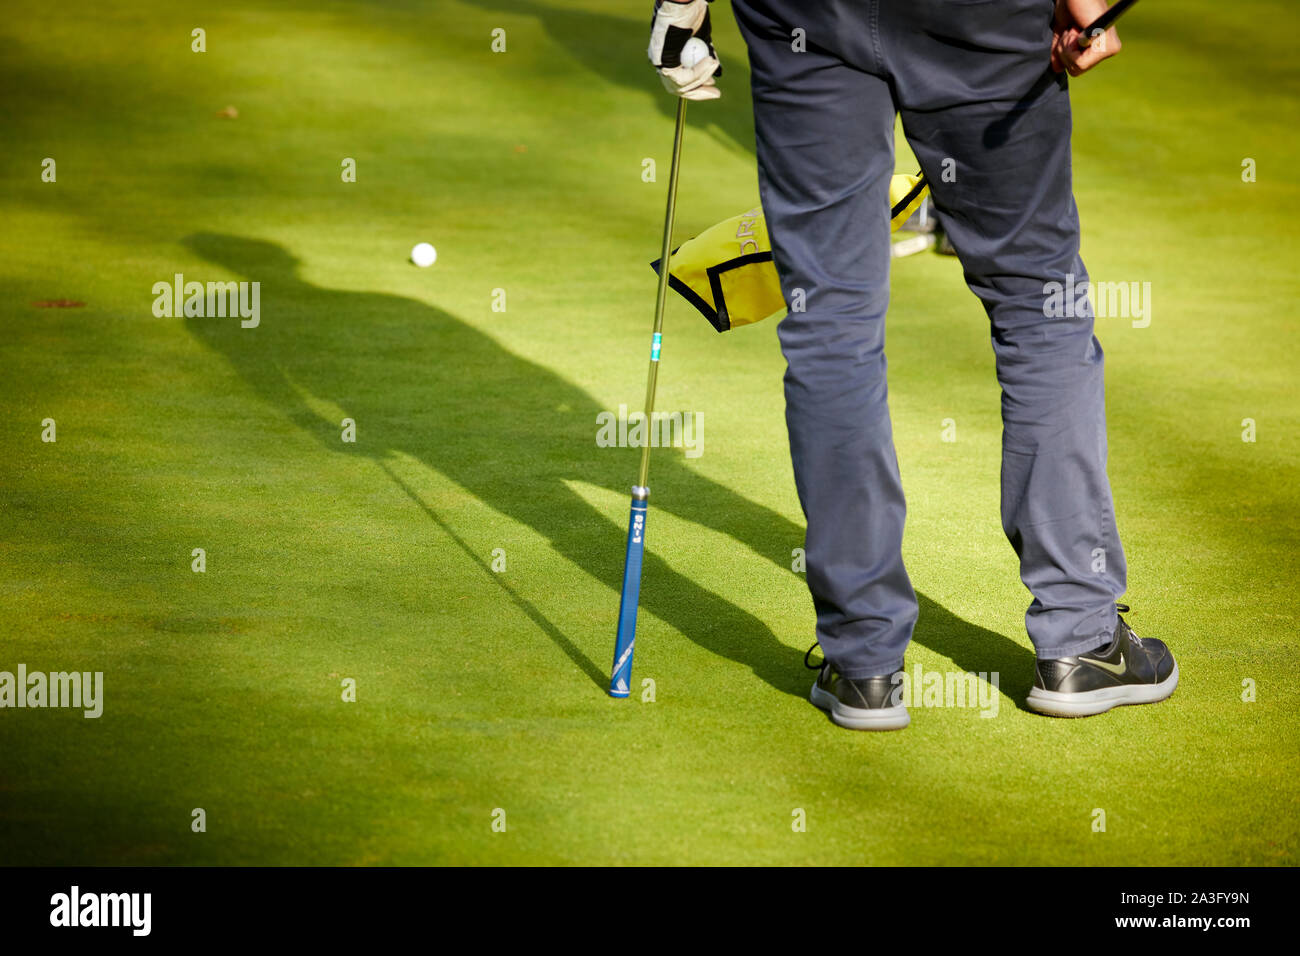 Golfspieler Golf spielen auf einem Putting Green Stockfoto